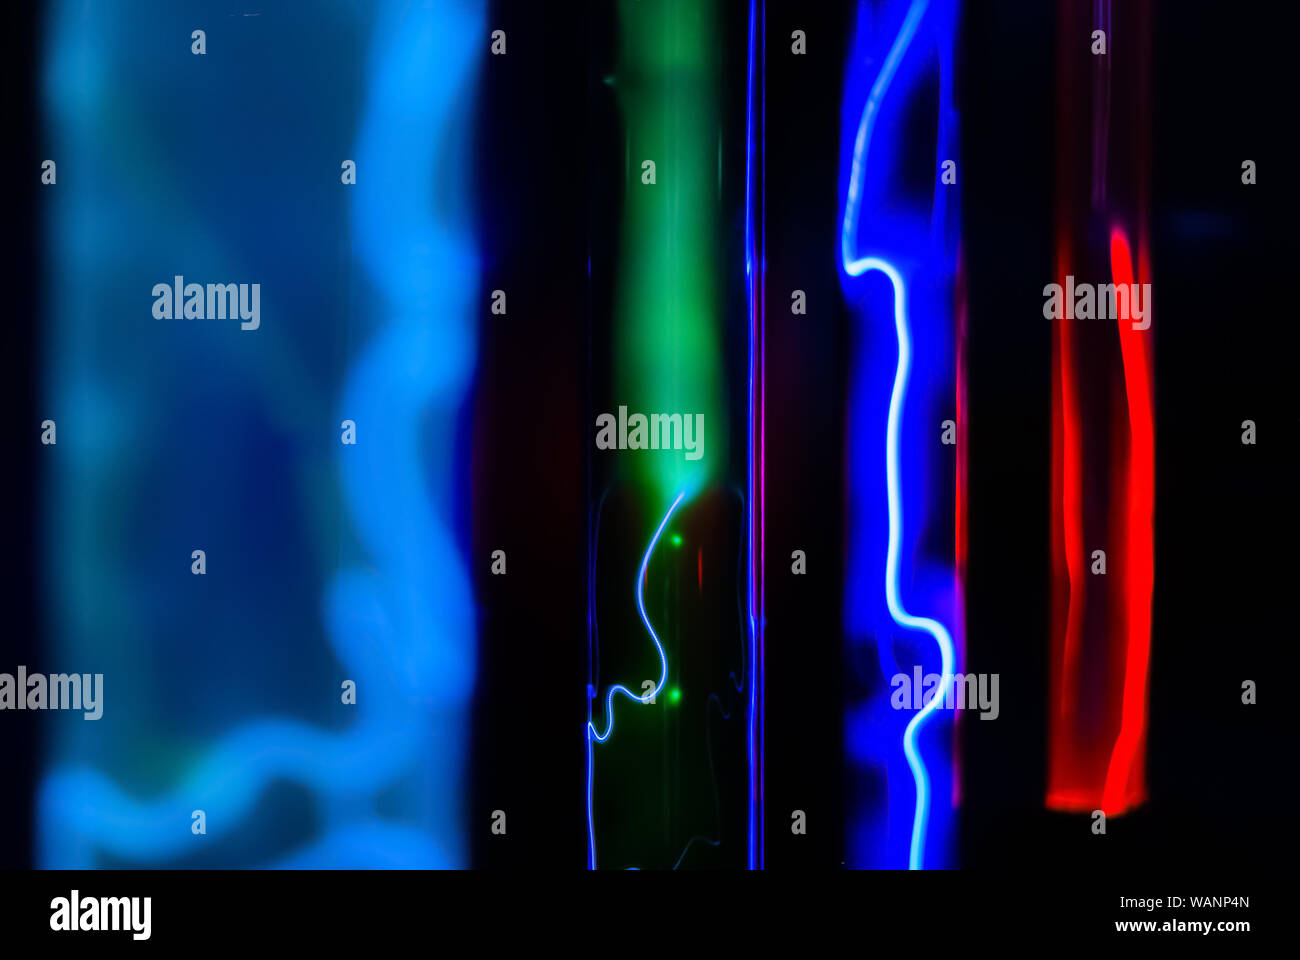 Abstrakte fluoreszierenden Hintergrund - mehrfarbig Leuchten verschiedener Edelgase in isolierflaschen unter Einwirkung eines elektrischen Entladung Stockfoto